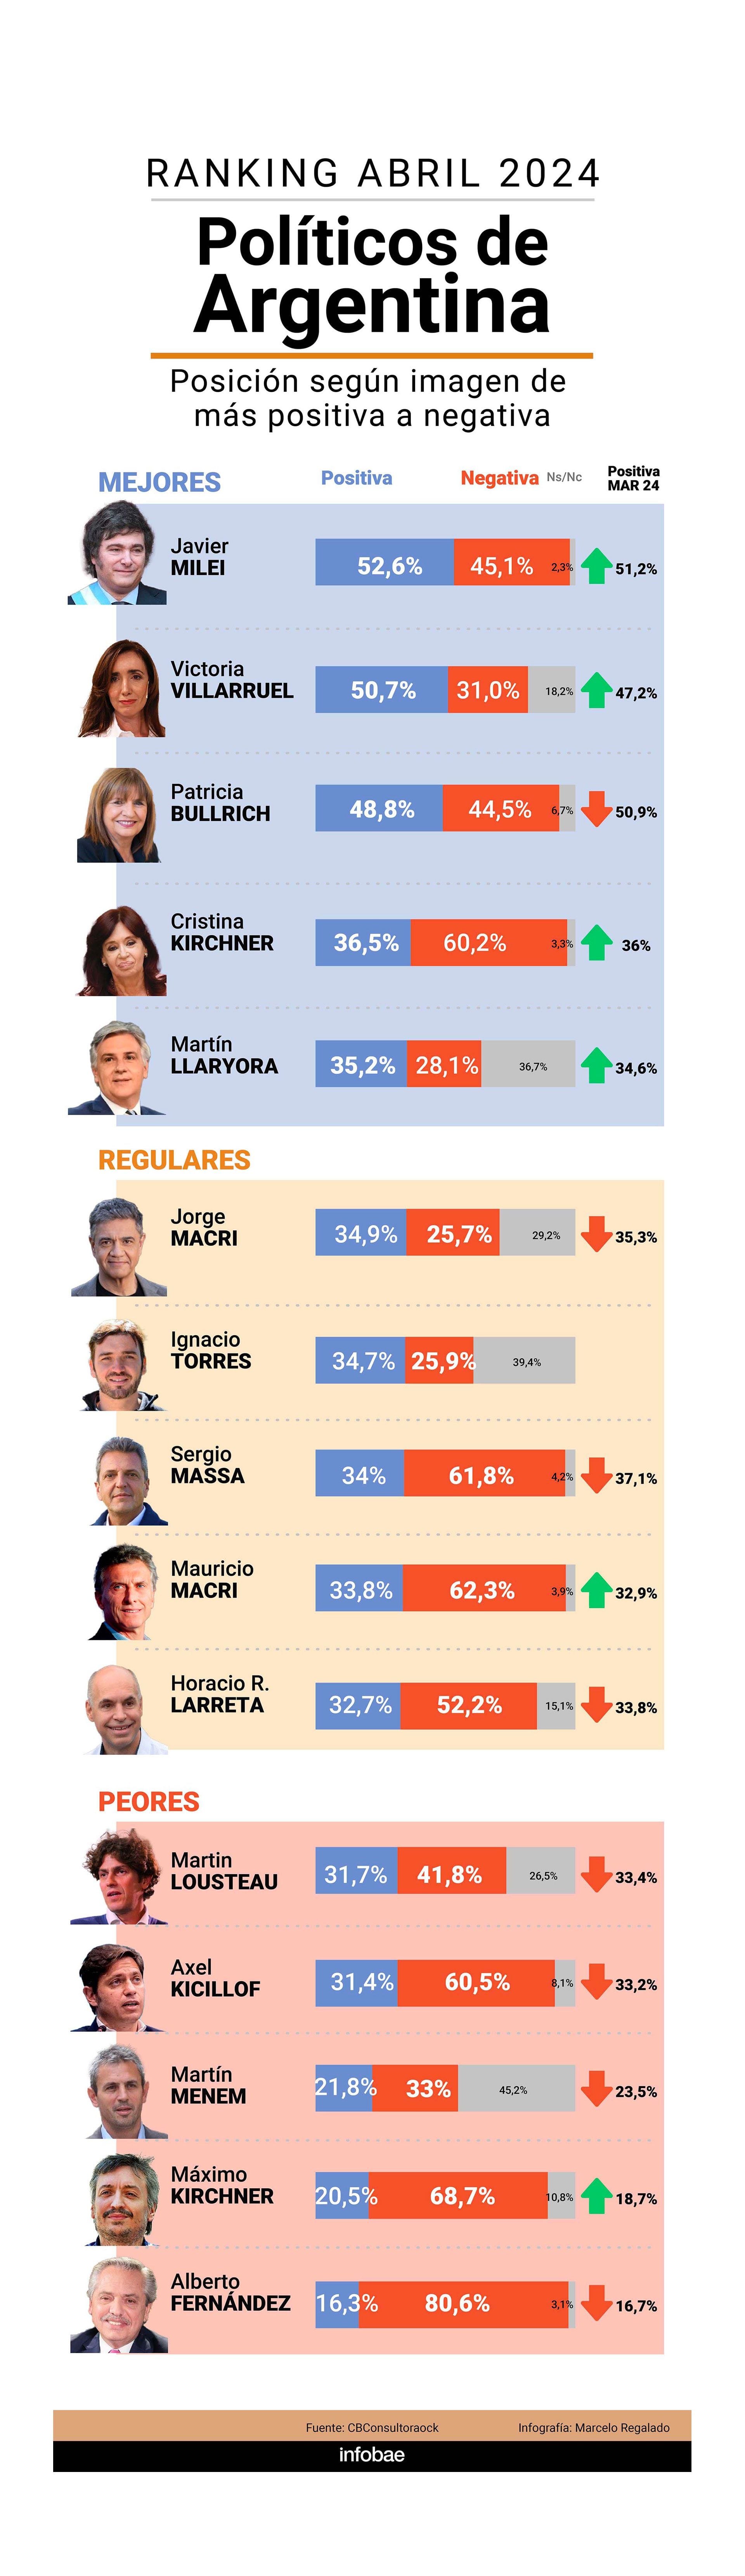 El ranking de políticos argentinos según su imagen positiva